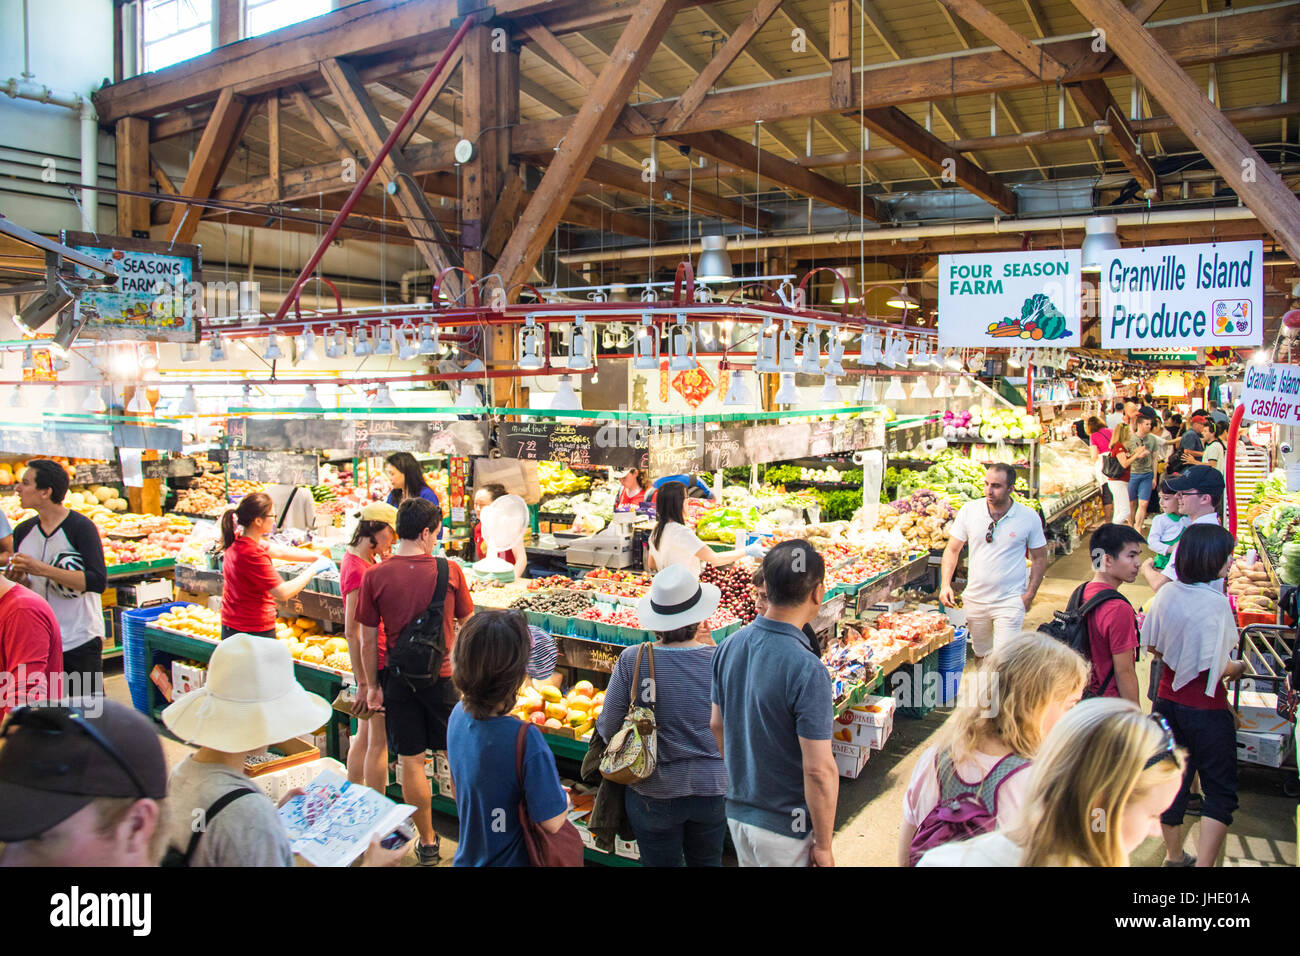 Granville Island Public Market, Granville Island, Vancouver, Canada Stock Photo